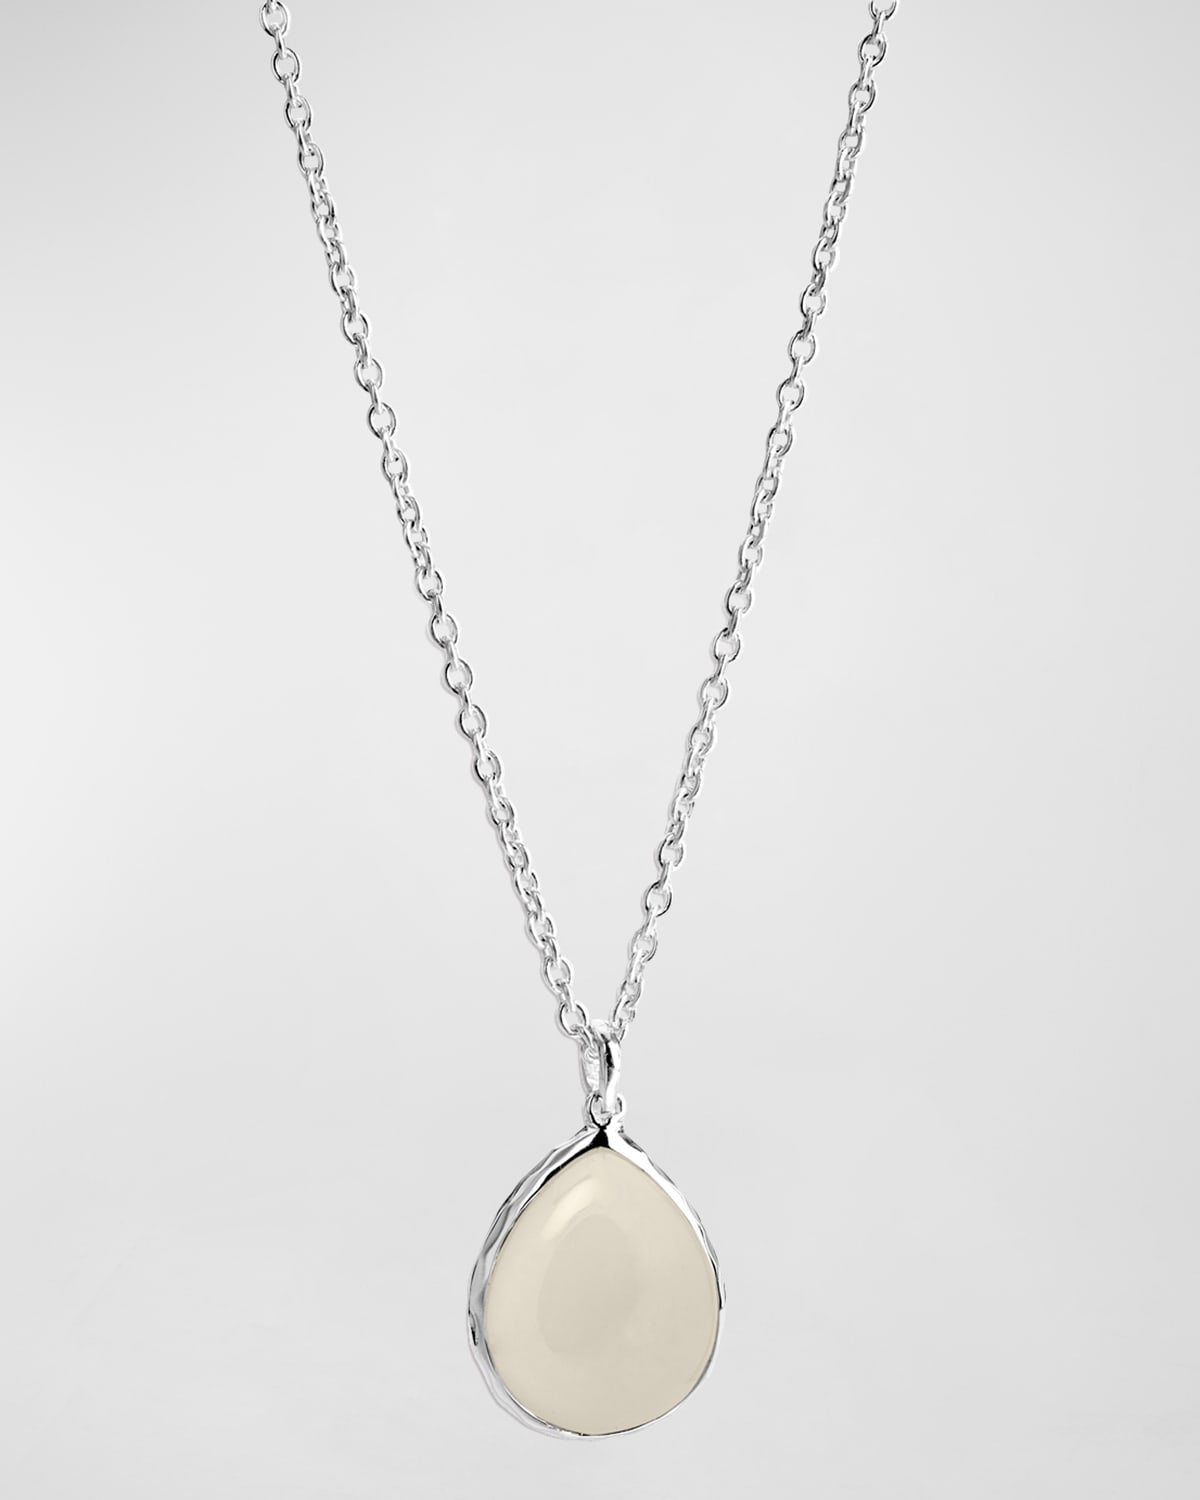 Mini Teardrop Pendant Necklace in Sterling Silver